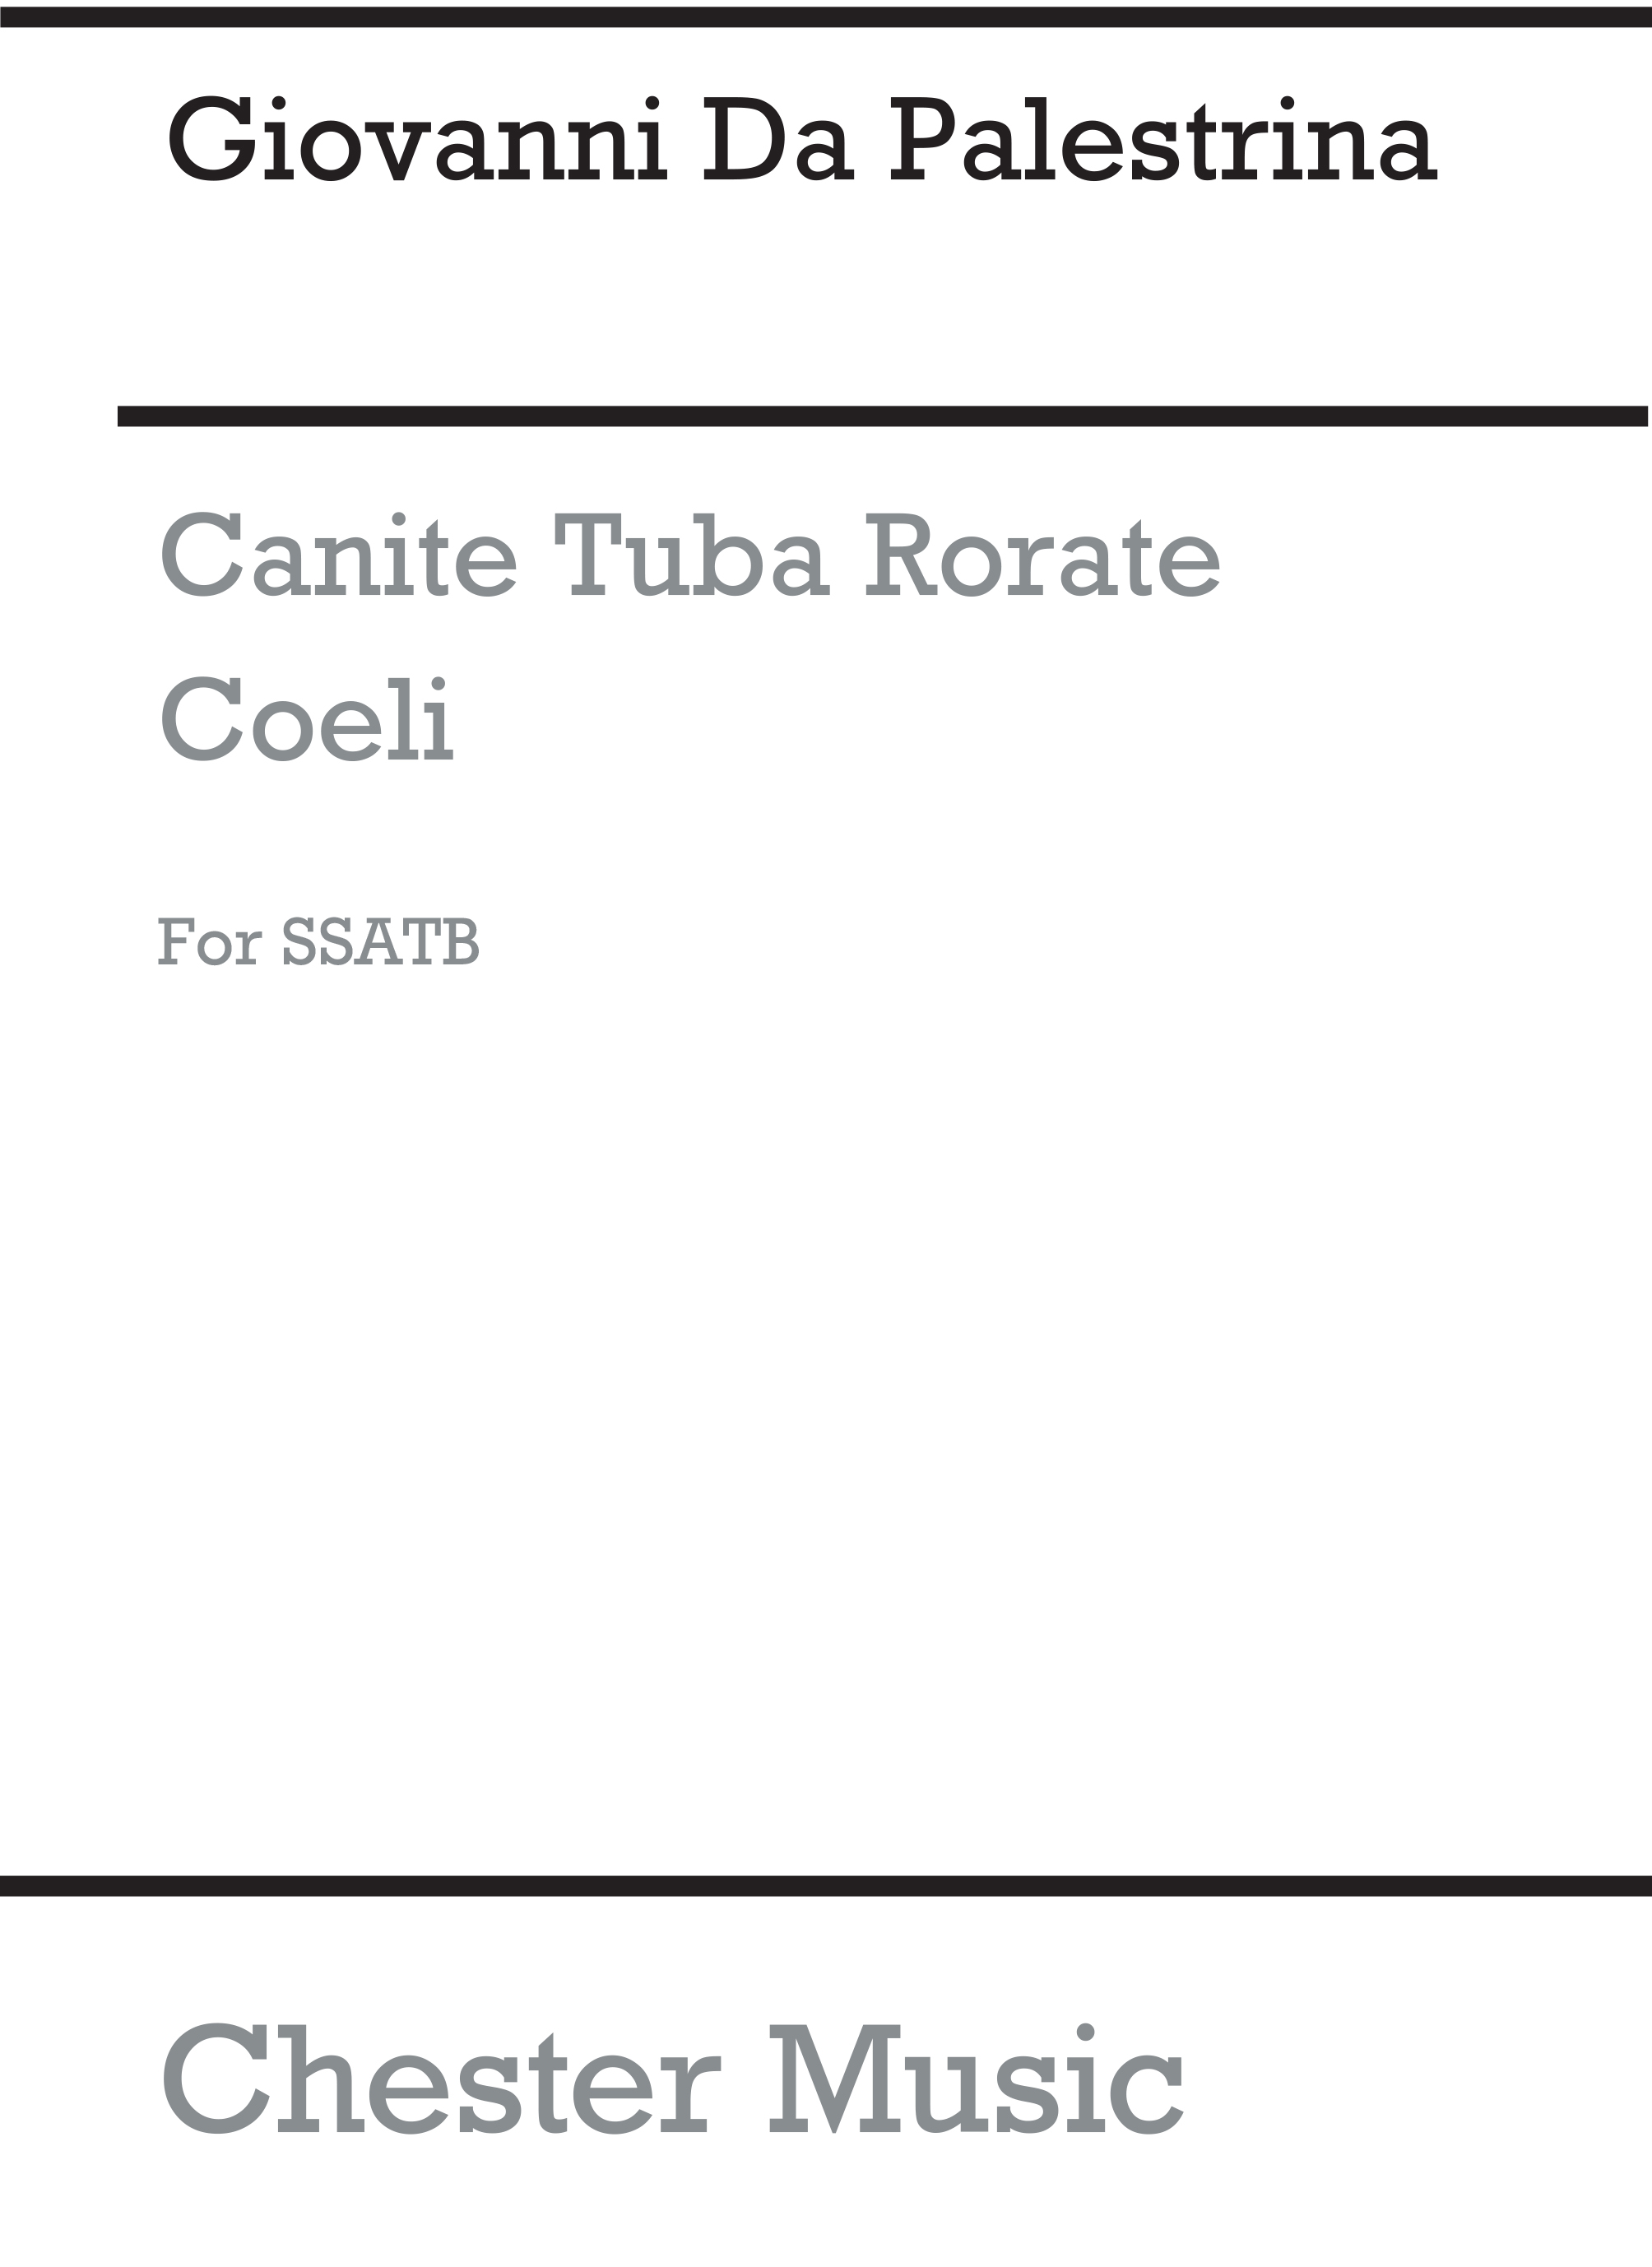 Giovanni Palestrina: Canite Tuba/Rorate Coeli: SATB: Vocal Score